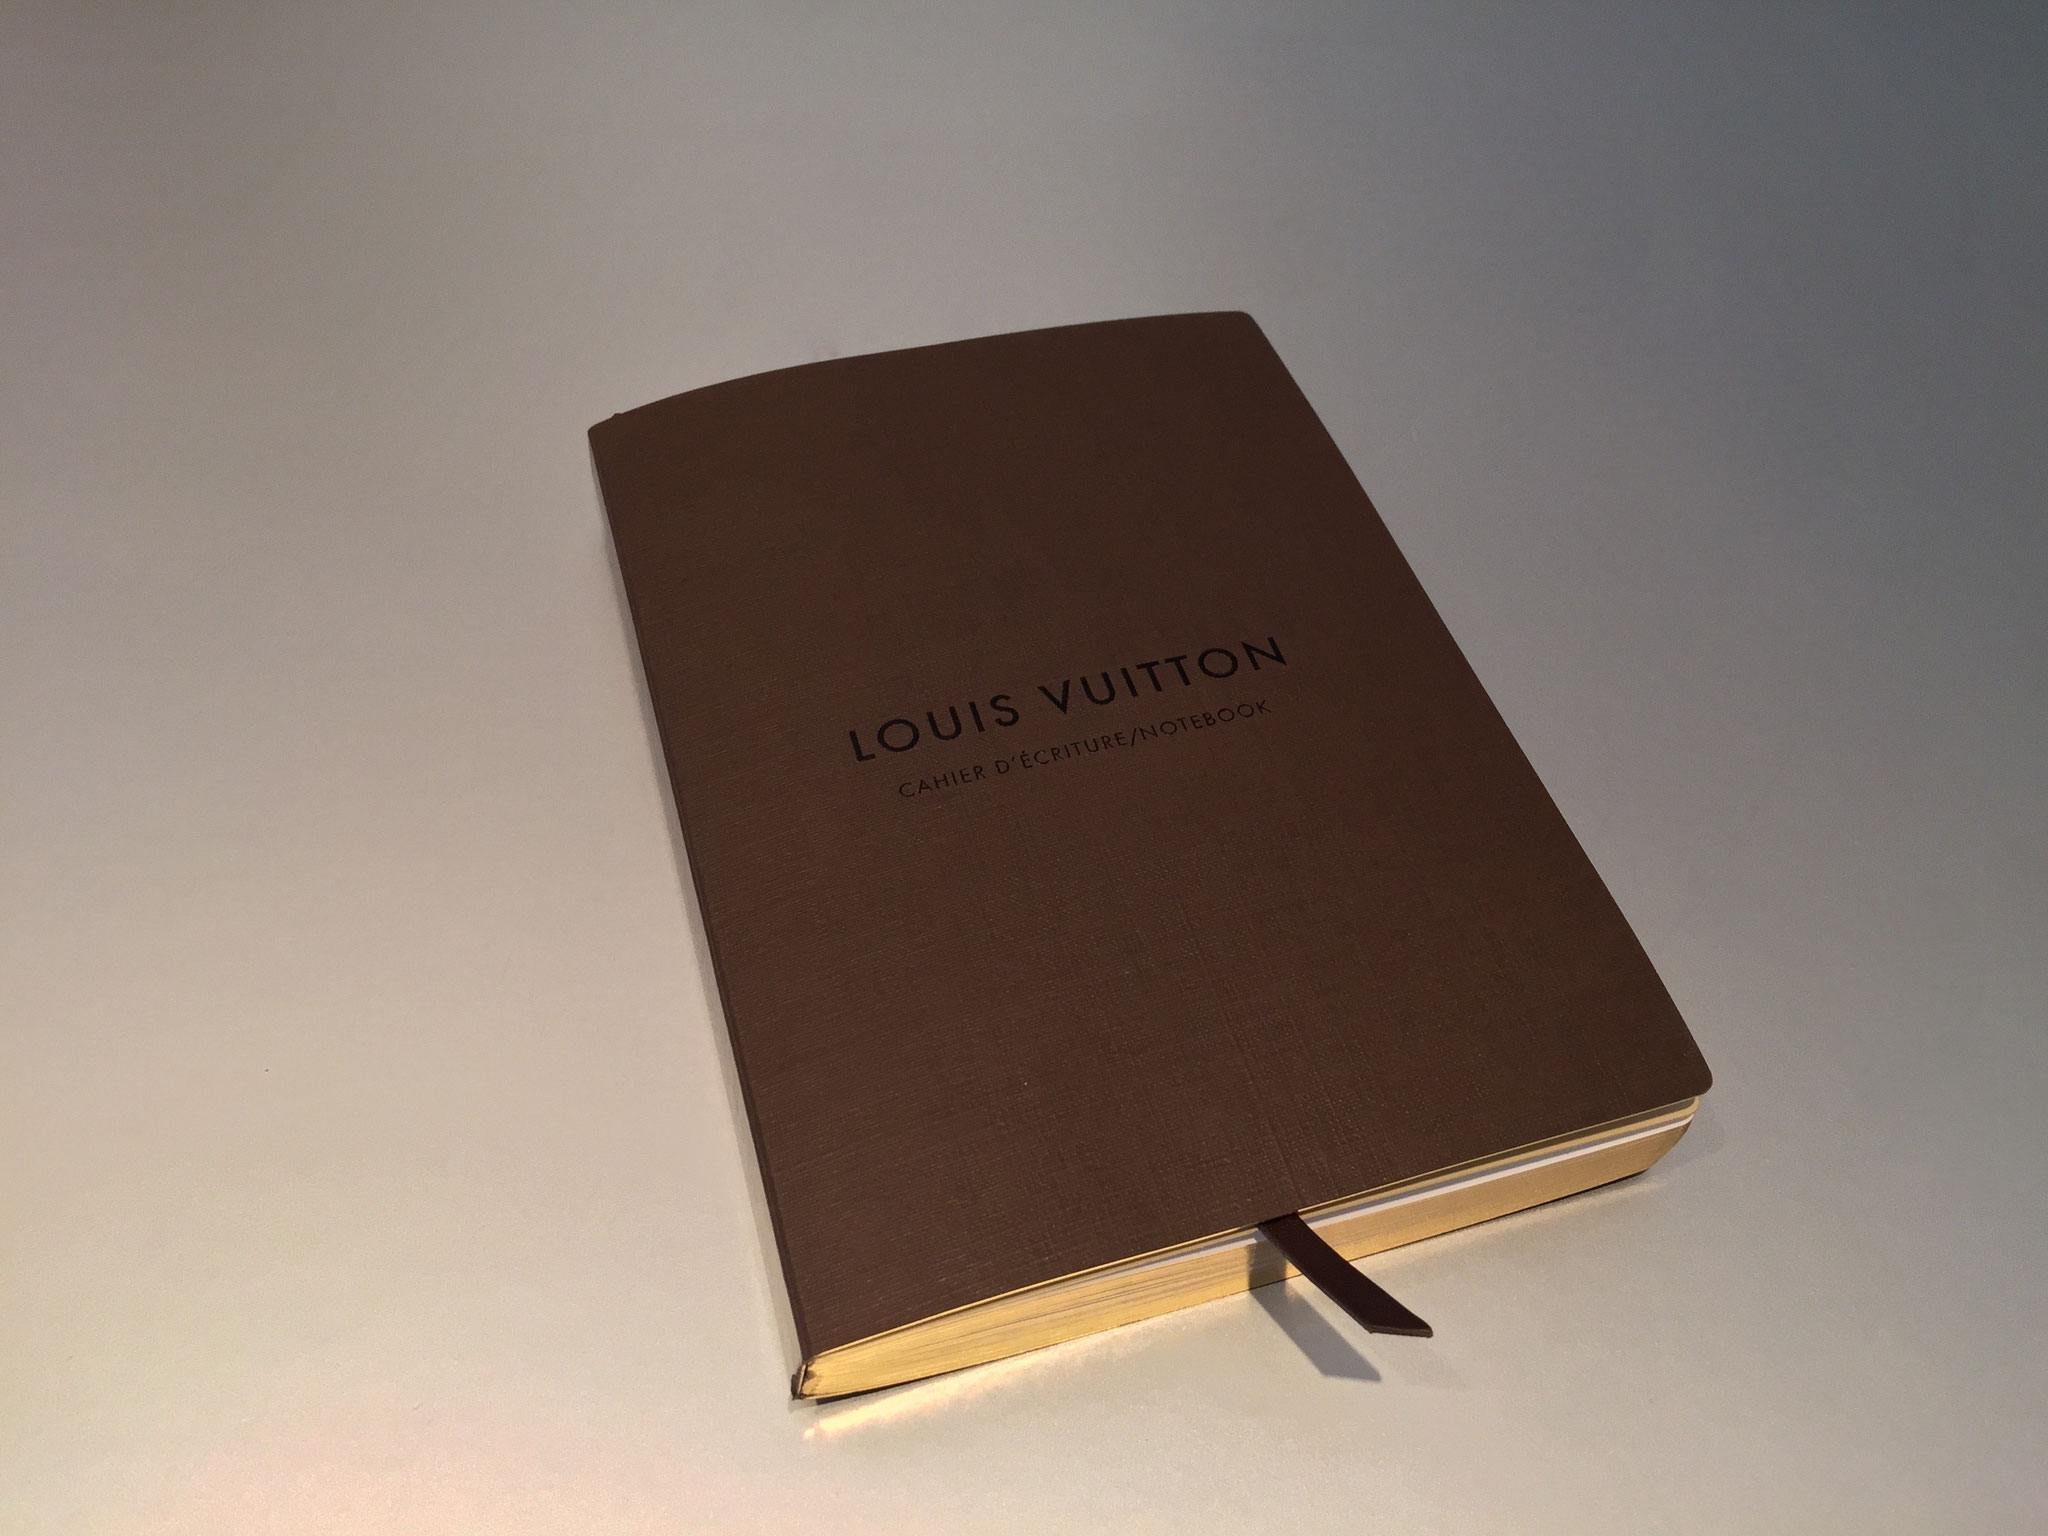 Louis Vuitton Sofia Coppola Notizbuchumschlag PM in Bleu Marine